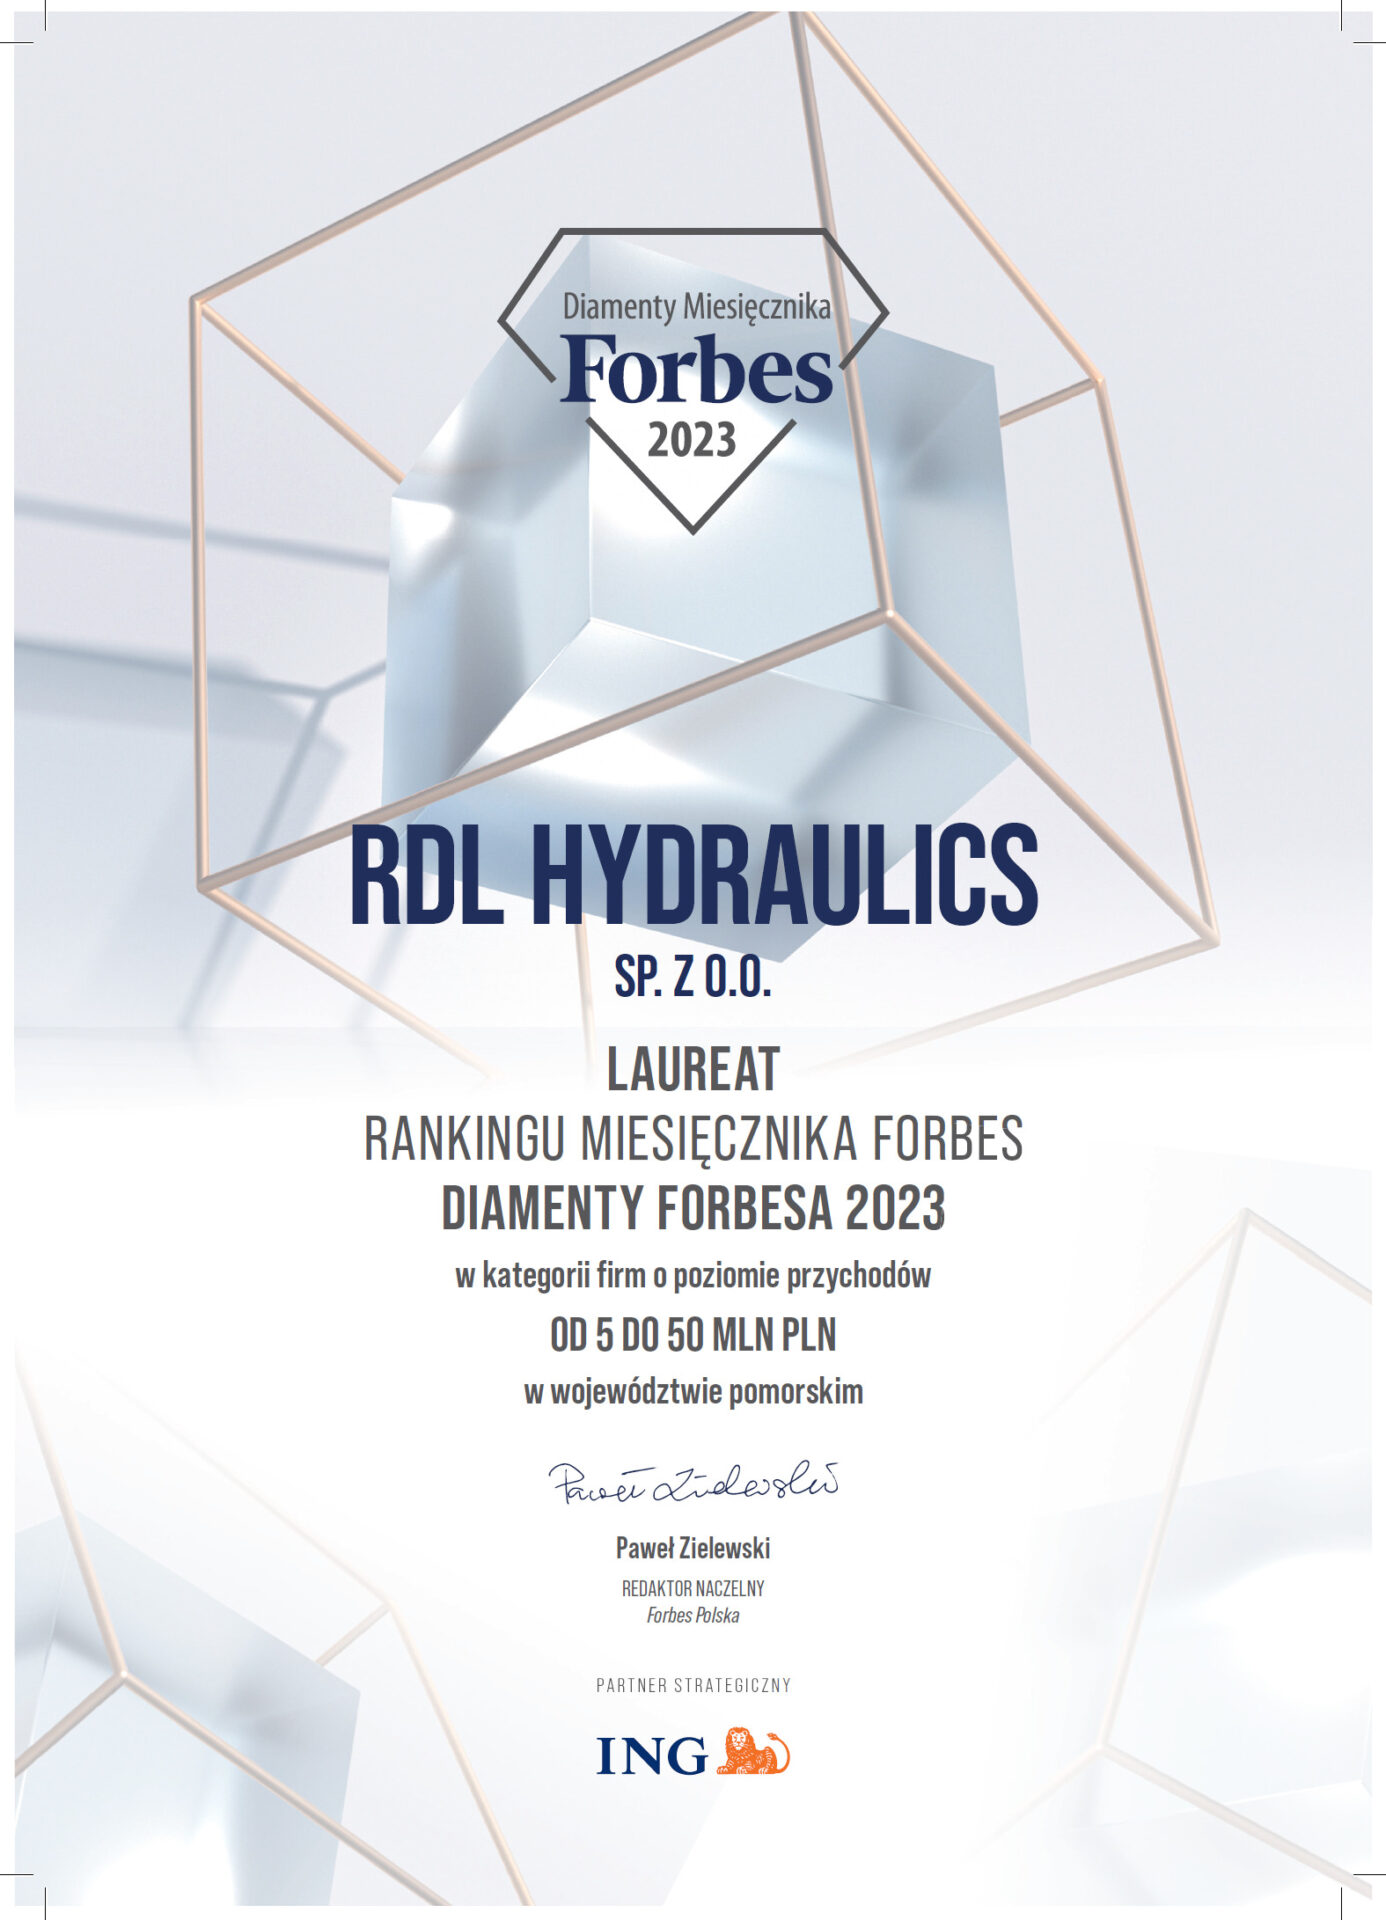 rdl forbes - Diamenty Forbesa 2023 są nasze